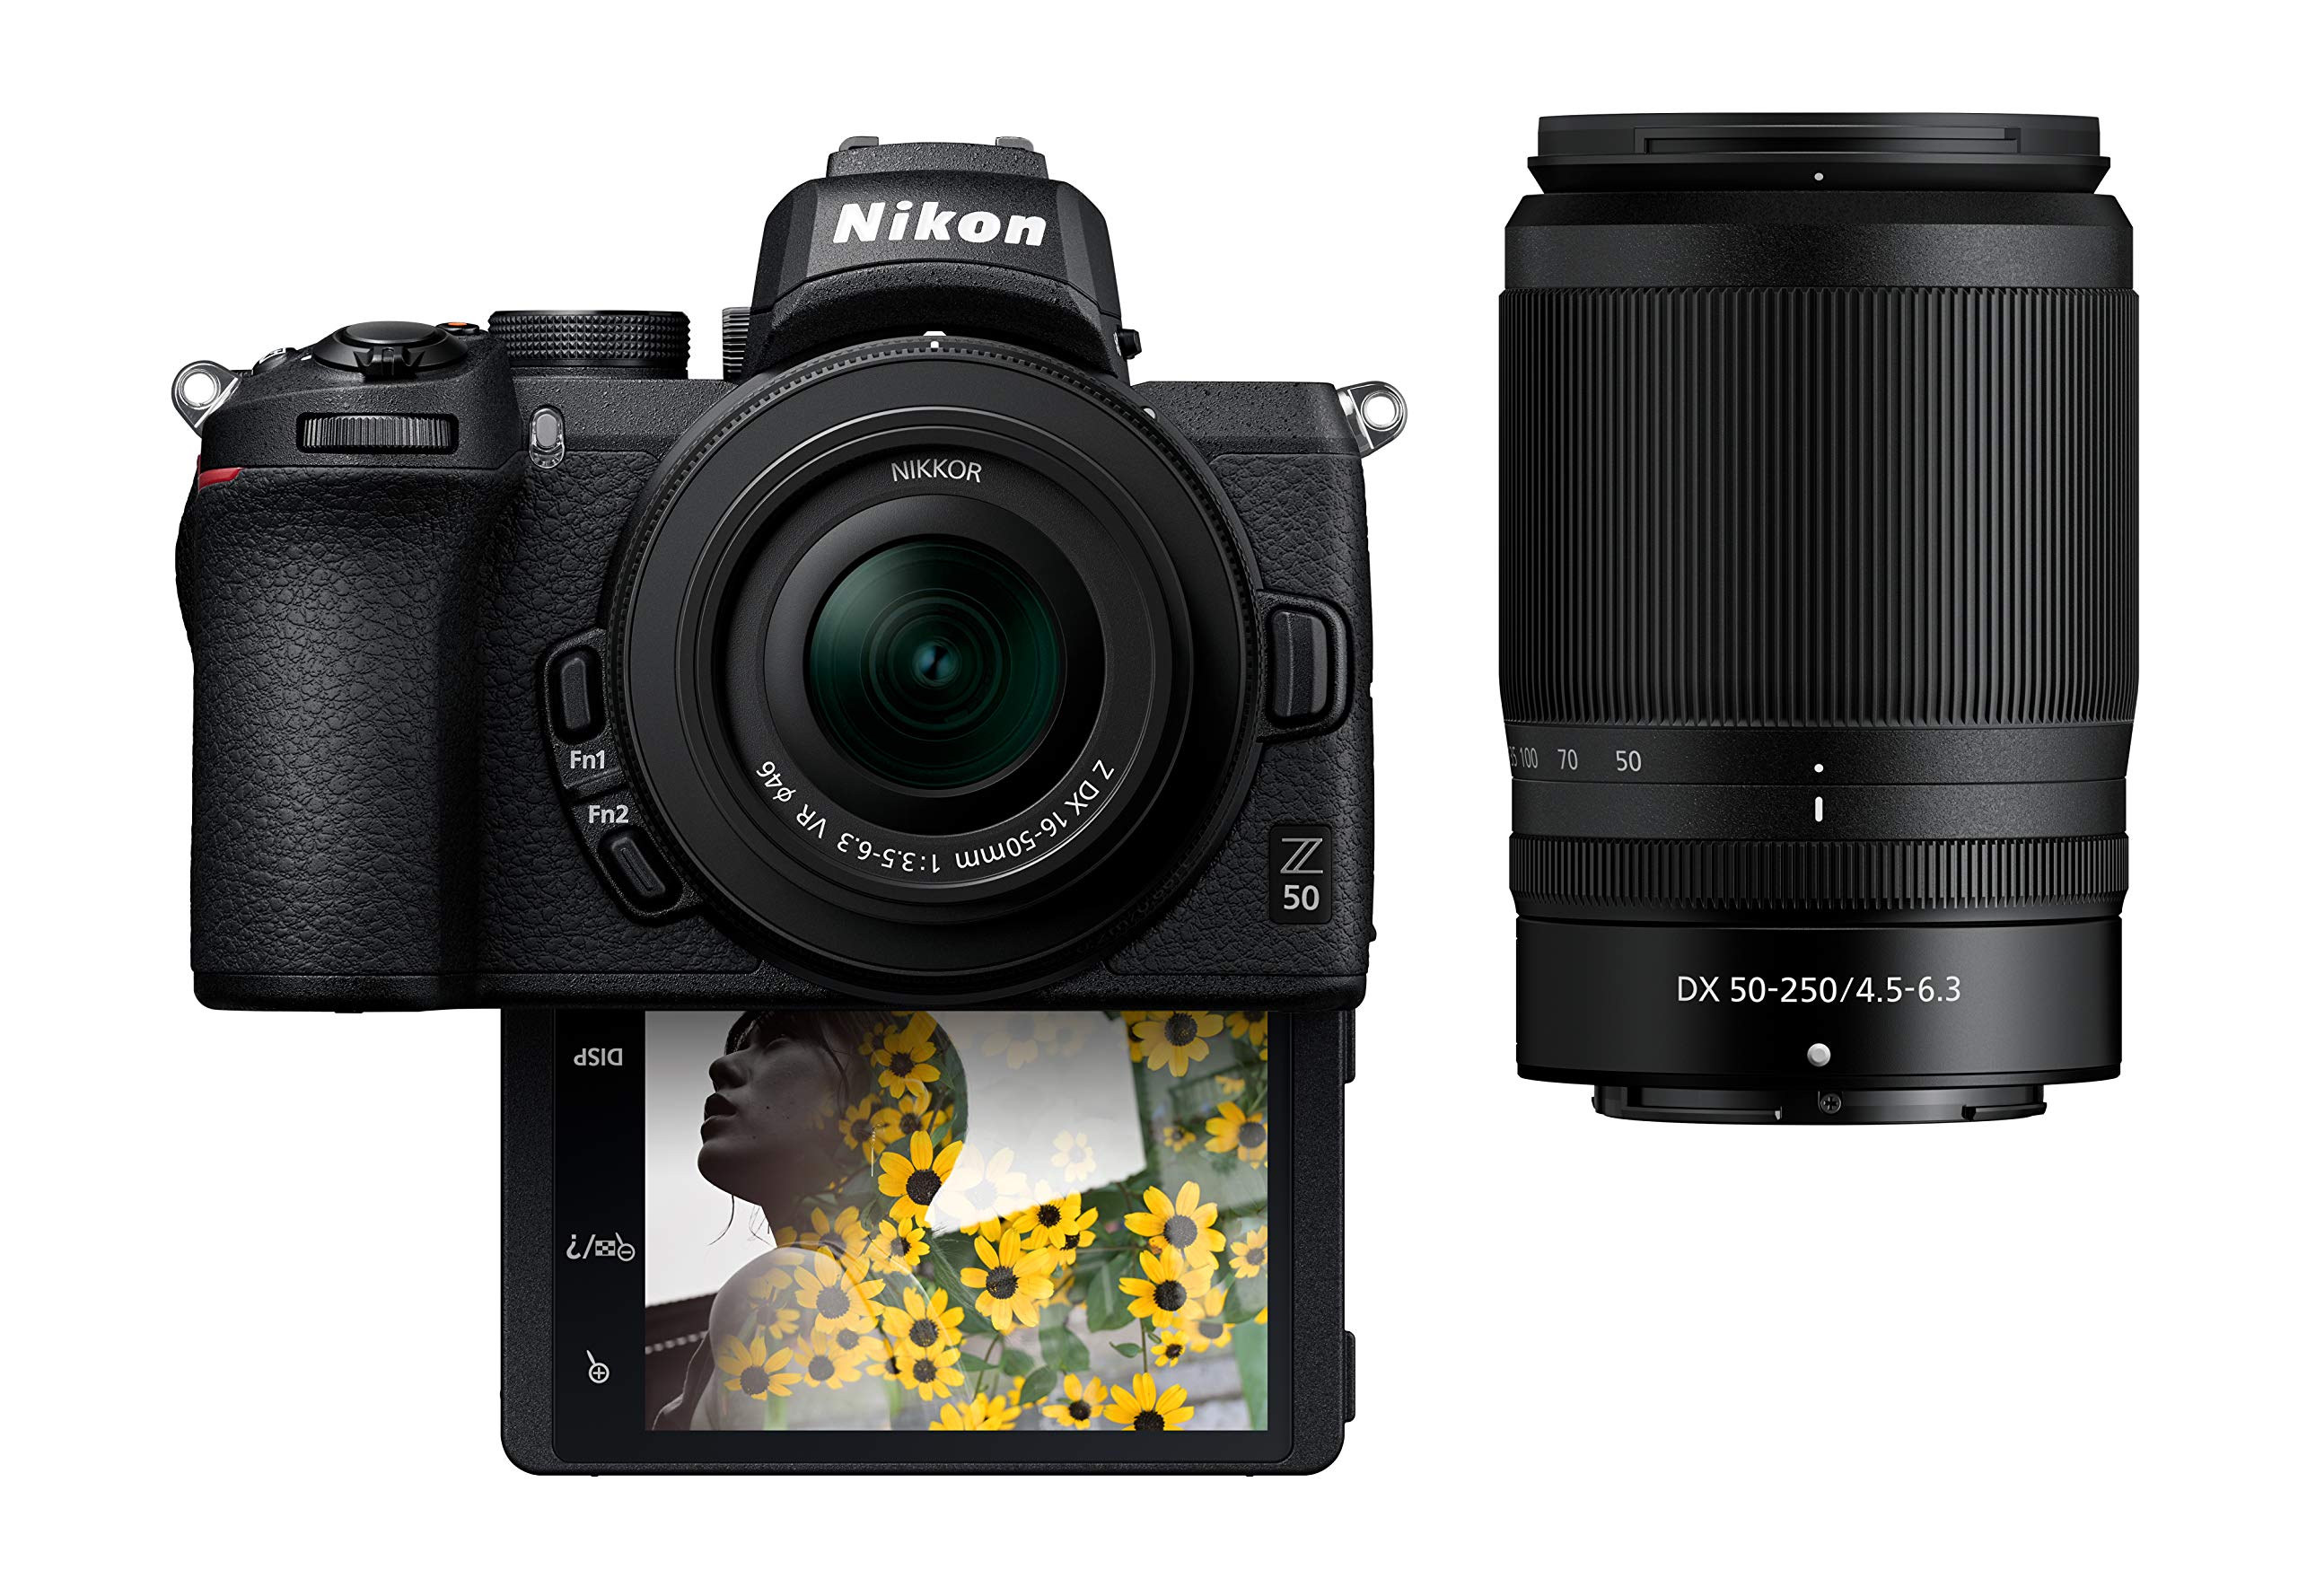  Nikon Z50 कॉम्पैक्ट मिररलेस डिजिटल कैमरा फ्लिप अंडर 'सेल्फी/व्लॉगर' एलसीडी के साथ...